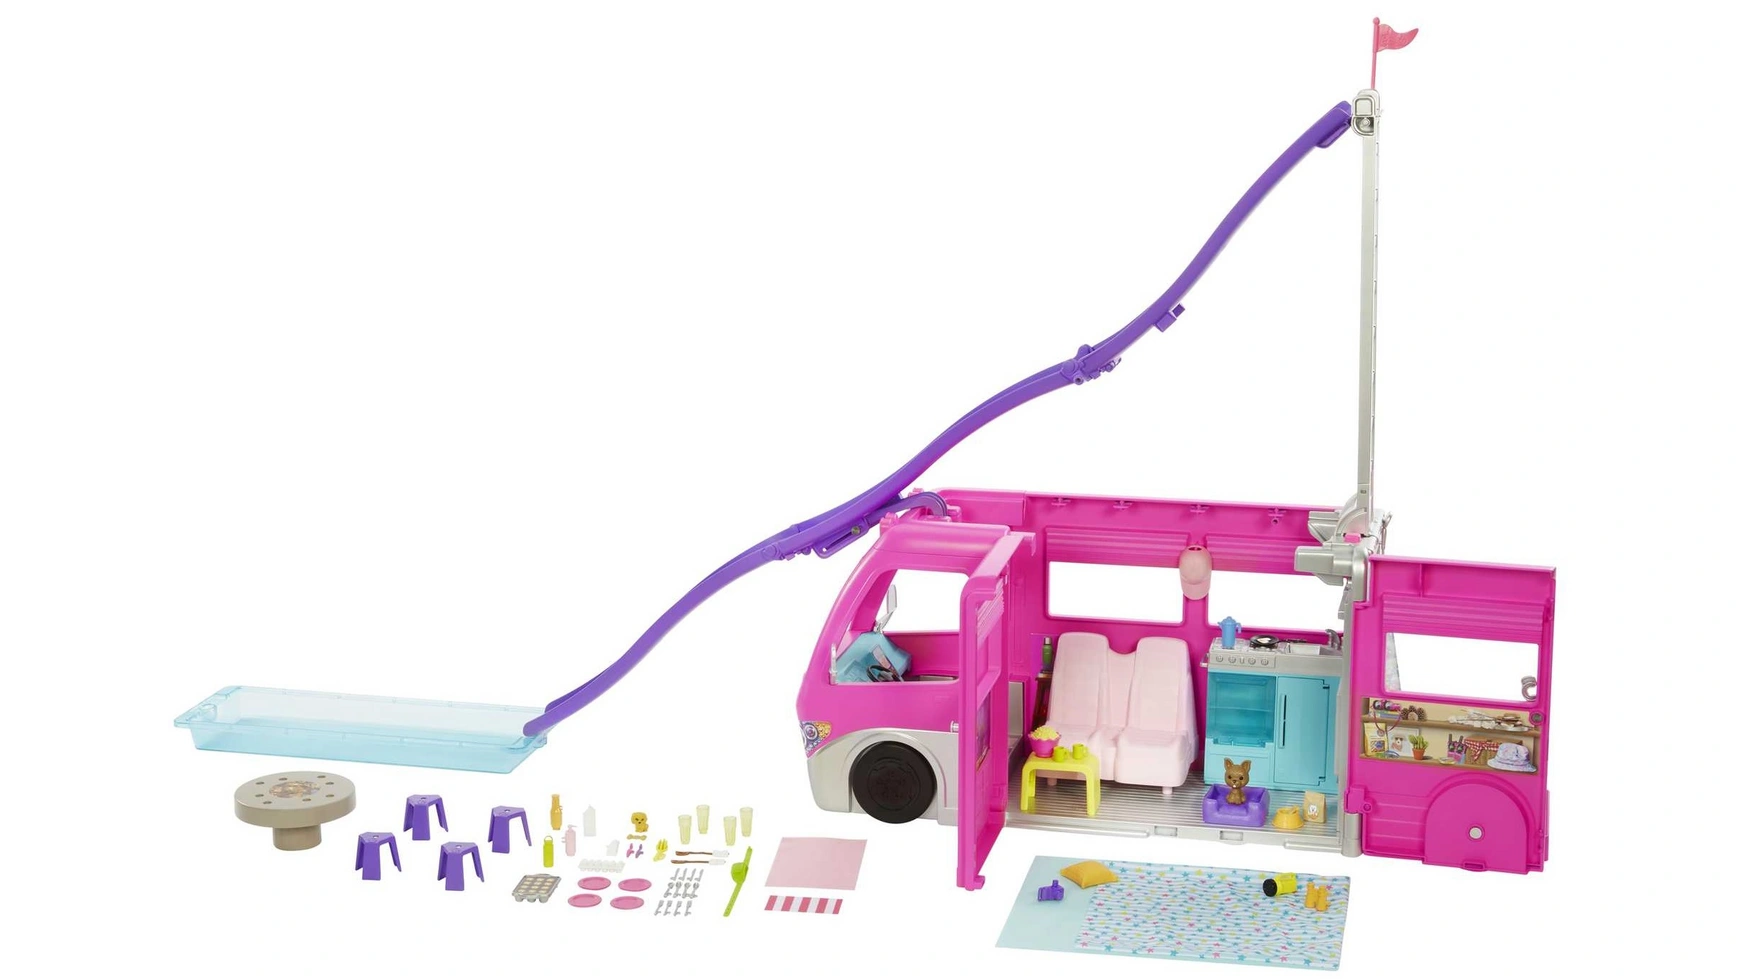 цена Автомобиль Barbie Super Adventure Camper высотой 76 см с бассейном, горкой и более 60 аксессуарами.